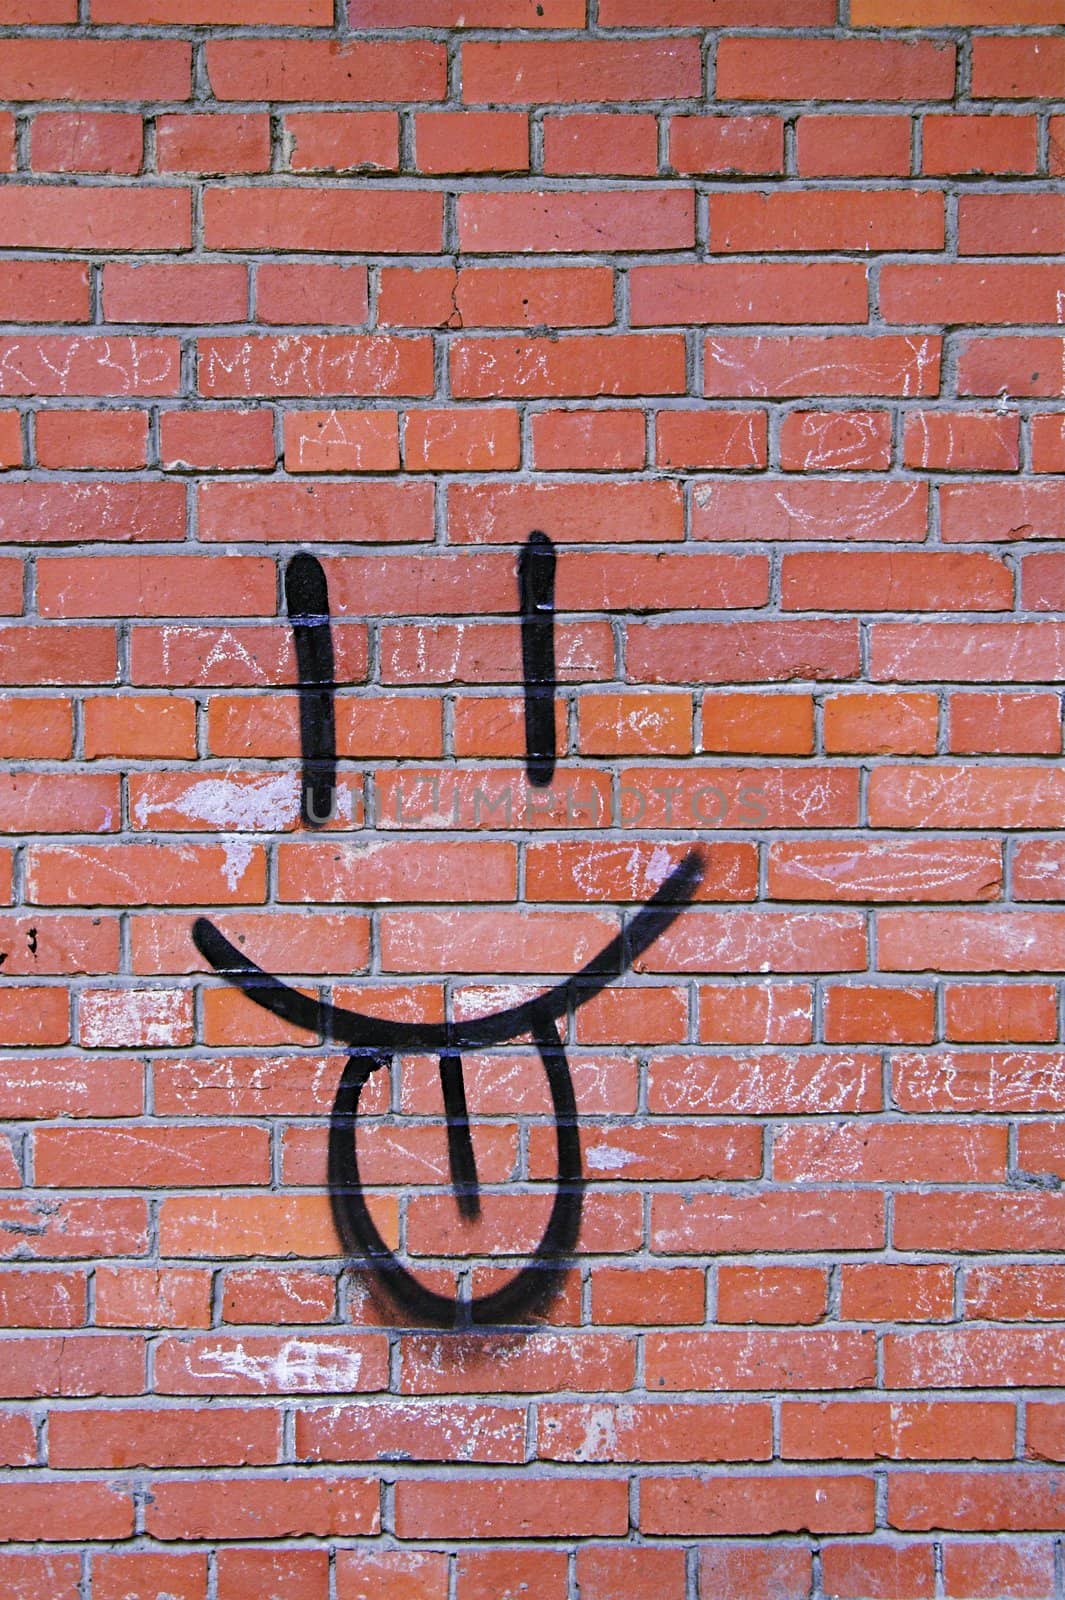 Brick Wall and Smile Graffiti  by simfan